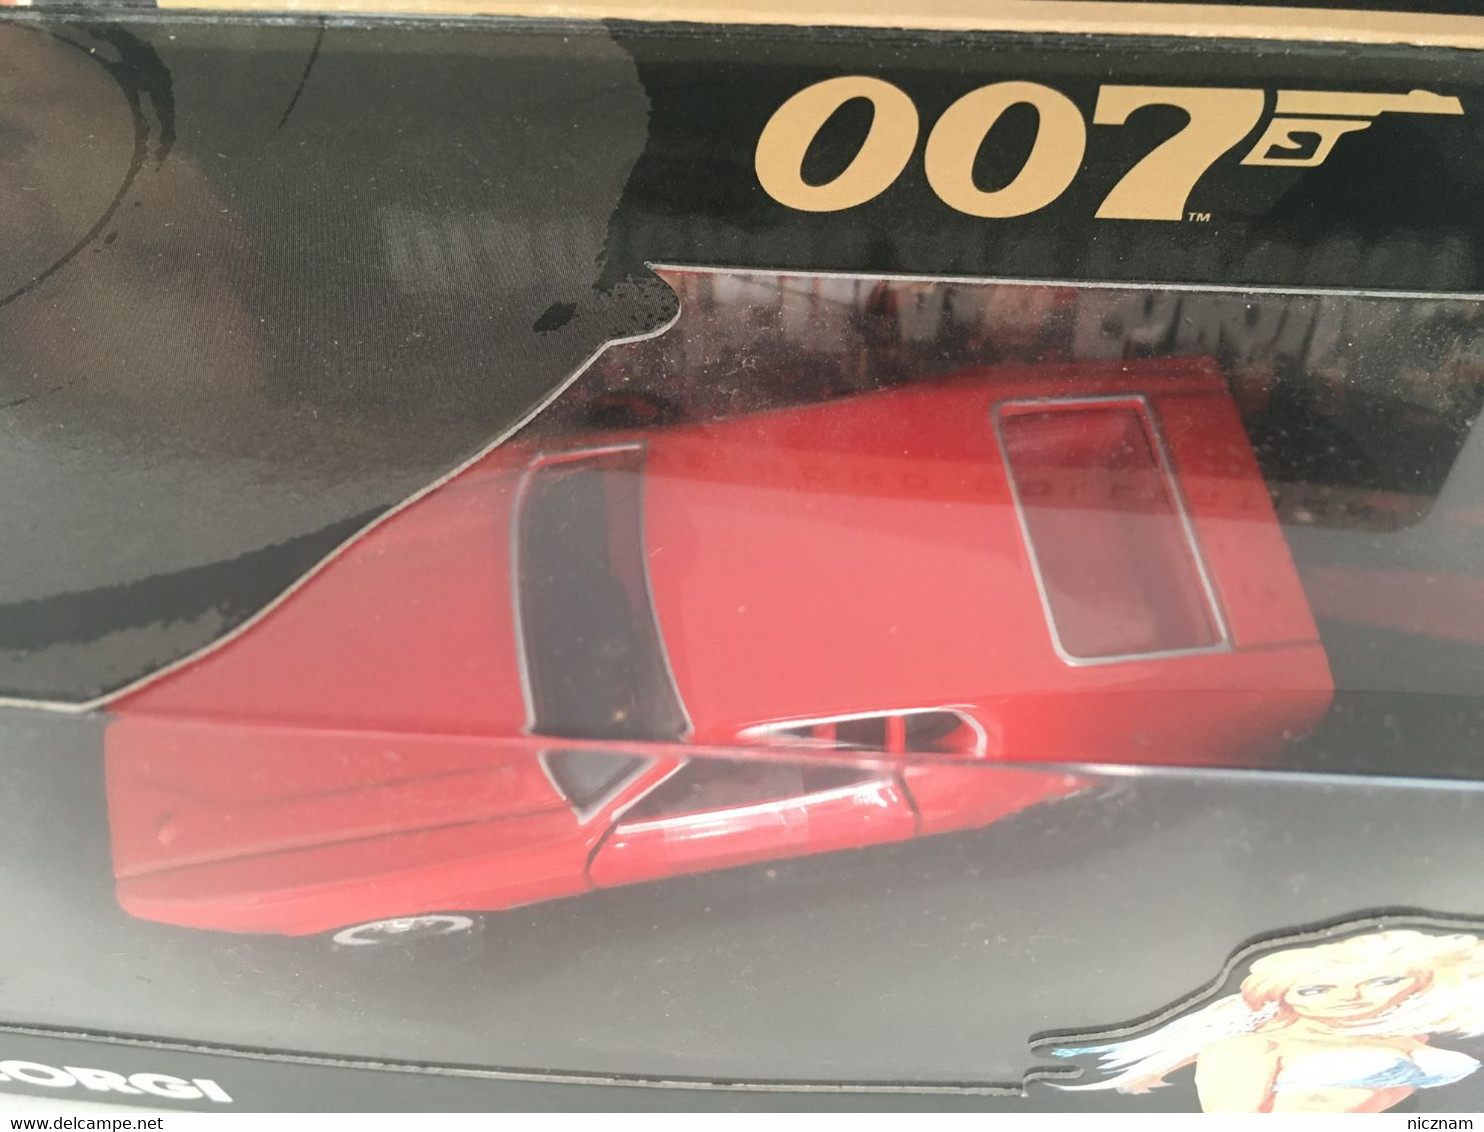 CORGI The Definitive James Bond Collection - Ford Mustang Mach 1 - Limitierte Auflagen Und Kuriositäten - Alle Marken